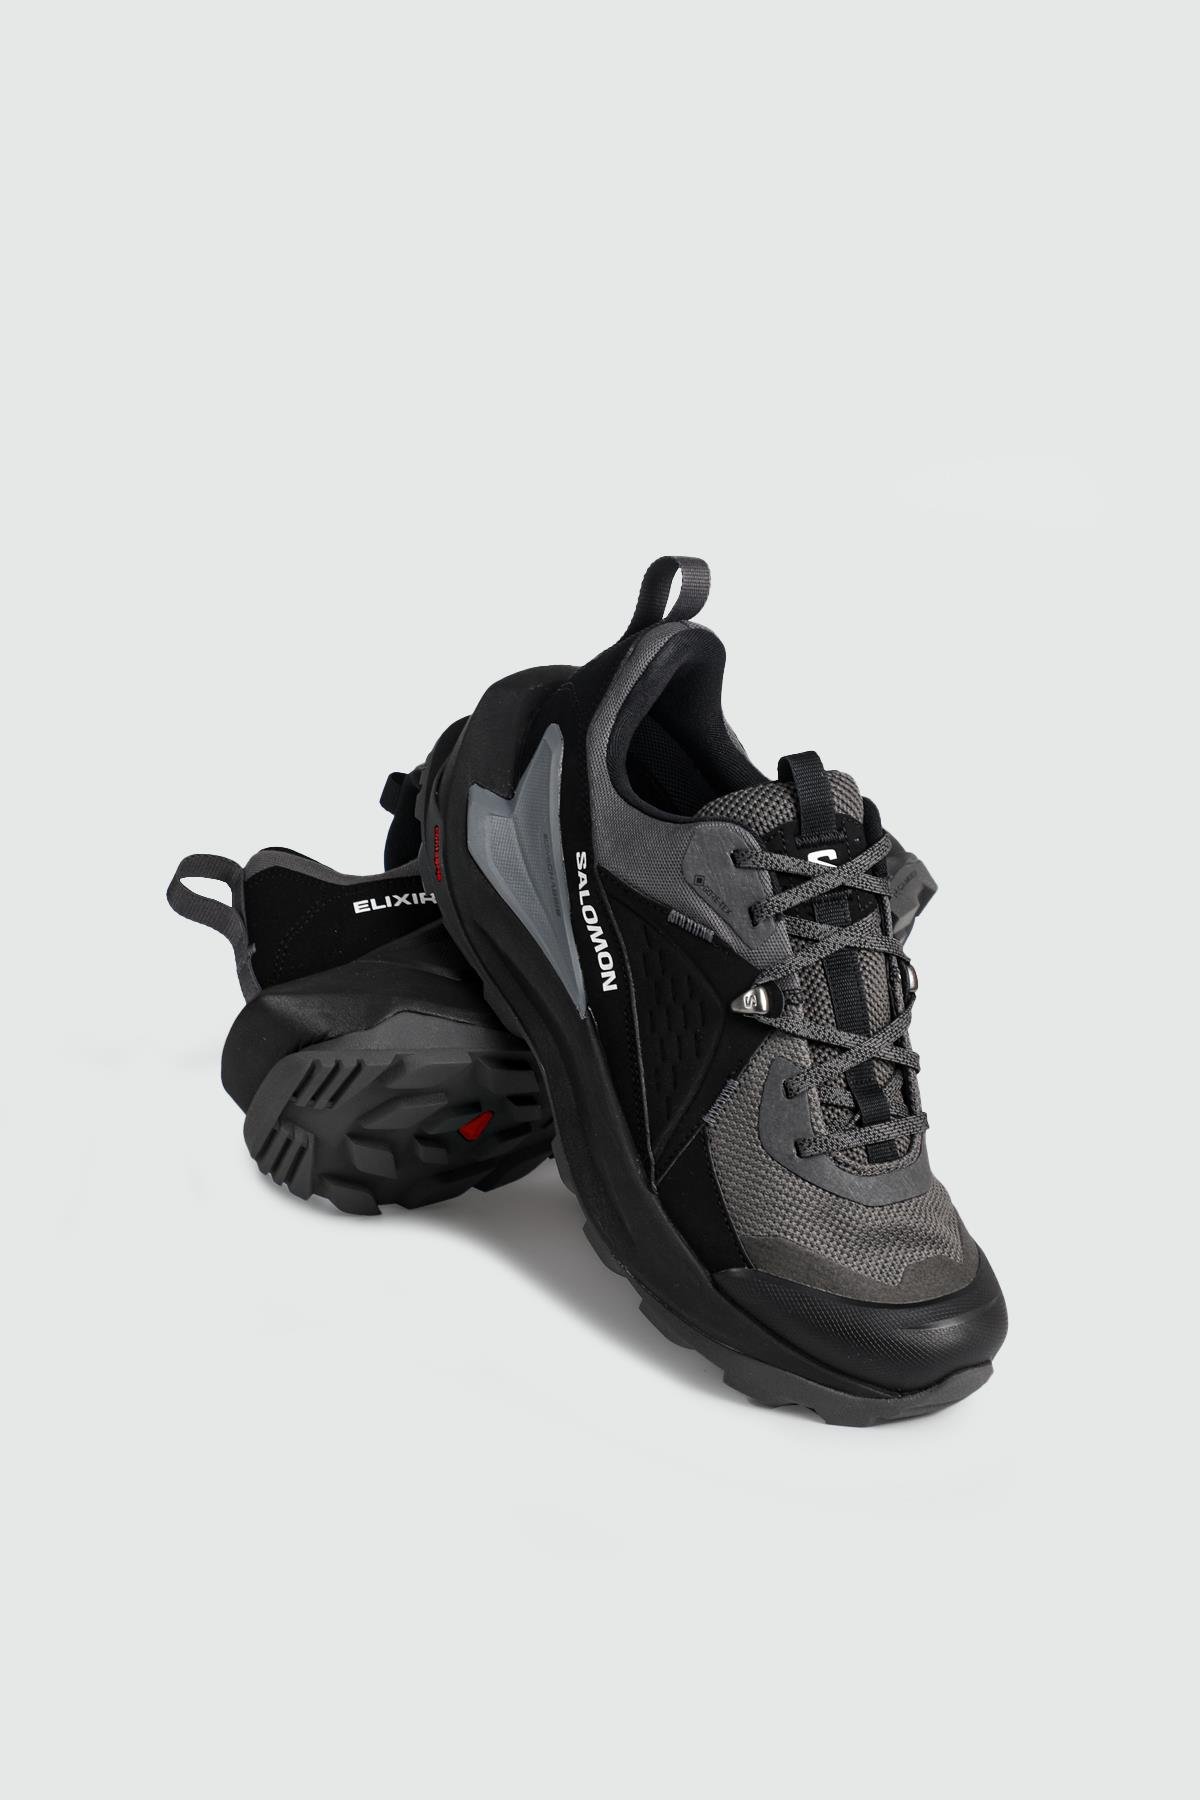 Salomon Outdoor Su Geçirmez Black/Magnet/Quiet Shade Erkek Spor Ayakkabı  L47295700 | Ayakkabı City